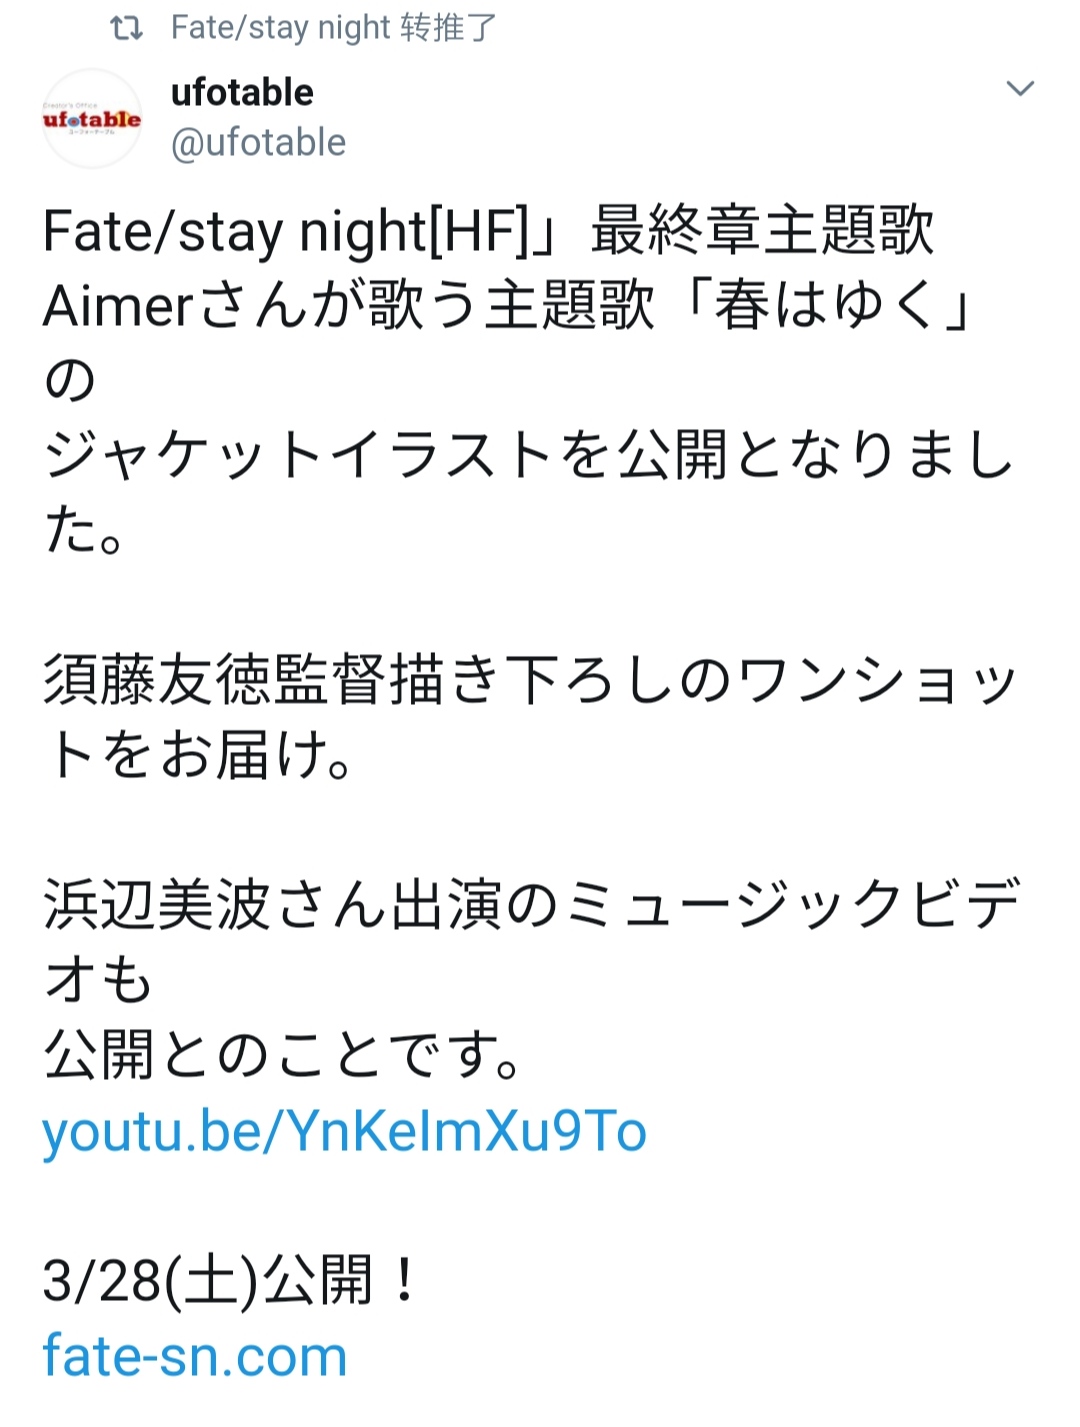 哇 剧场版 Fate Stay Night Hf 最终章主题曲 春はゆく 公开试听了吖 命运 冠位指定综合 Taptap 命运 冠位指定社区